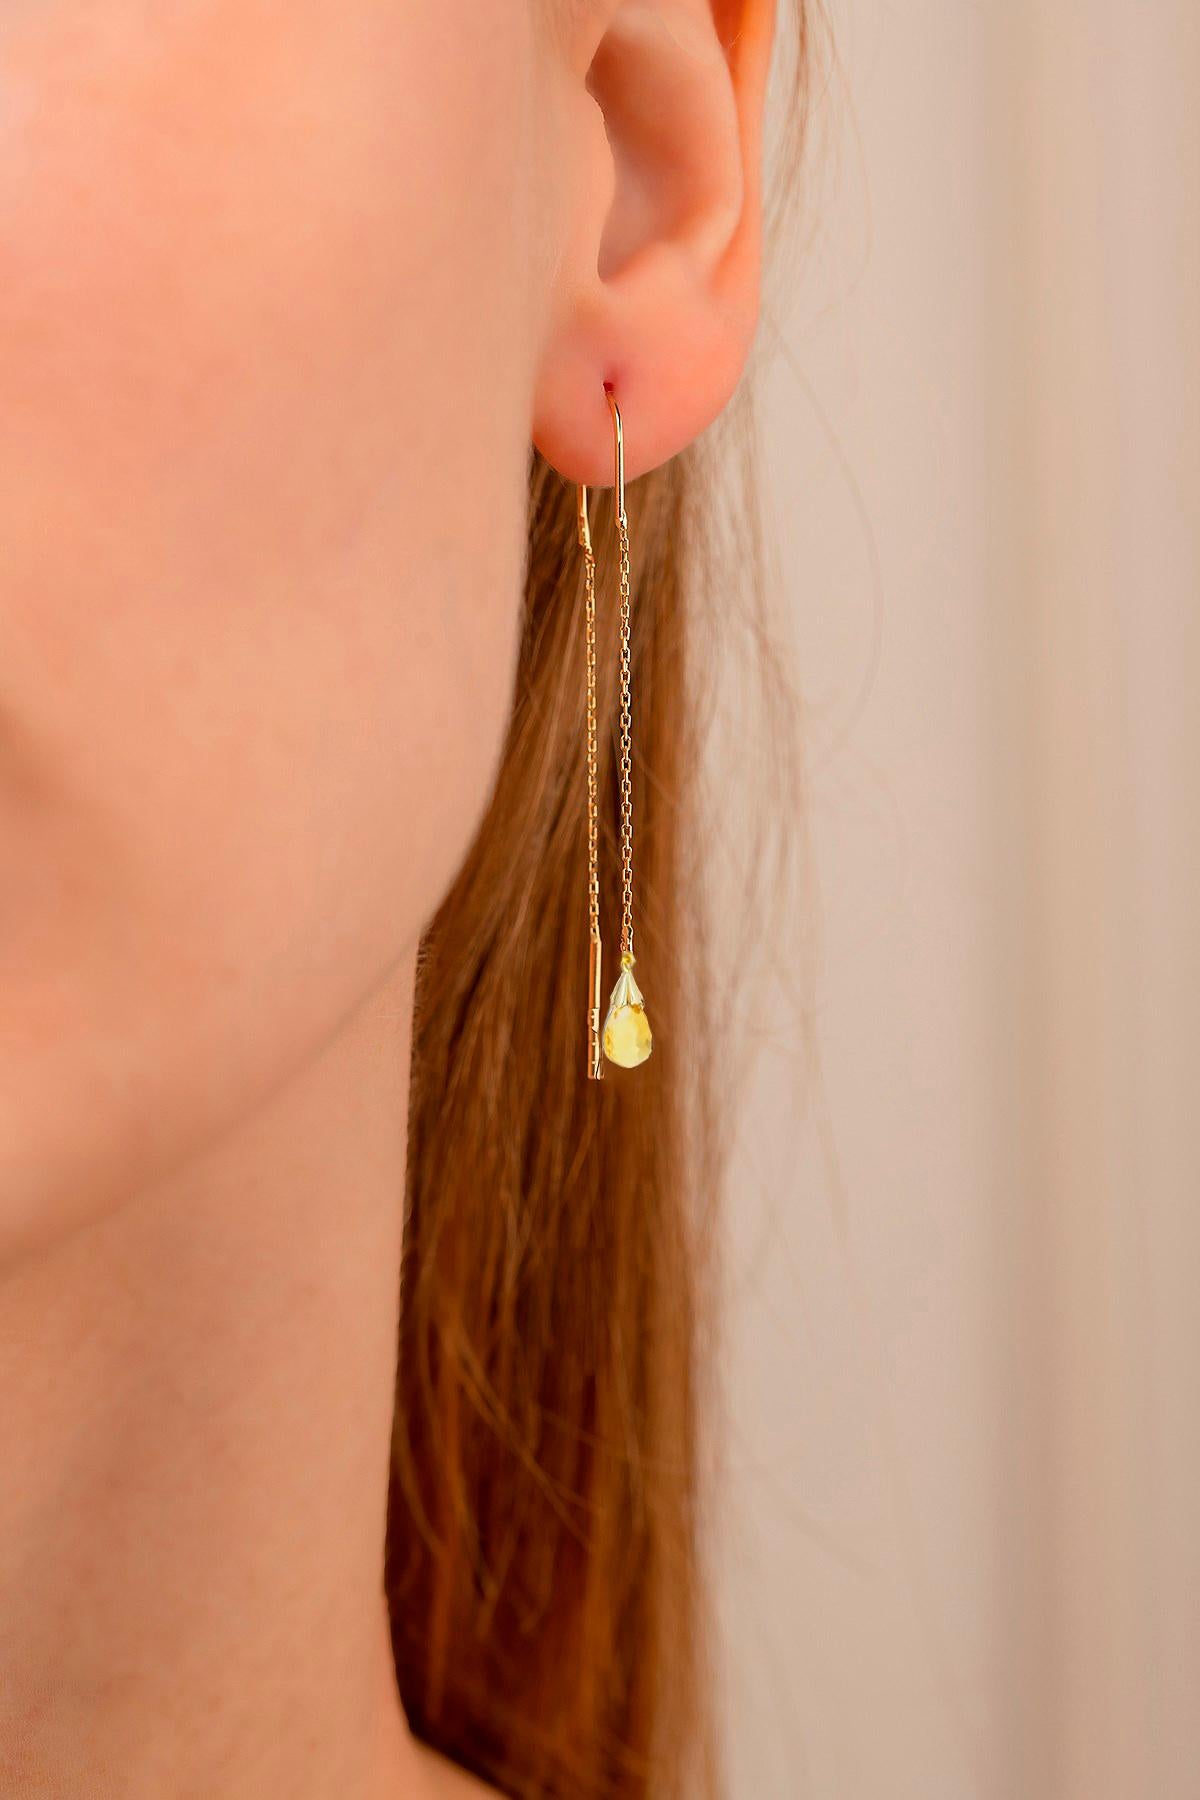 Boucles d'oreilles Threader en or jaune 14 carats avec citrines. 
Boucles d'oreilles en citrine à chaîne fine. Enfile-oreilles en forme de U. Boucles d'oreilles en citrine de tous les jours.

Métal : or jaune 14k
Poids : 1,81 g.
Taille : 13,5 mm (4